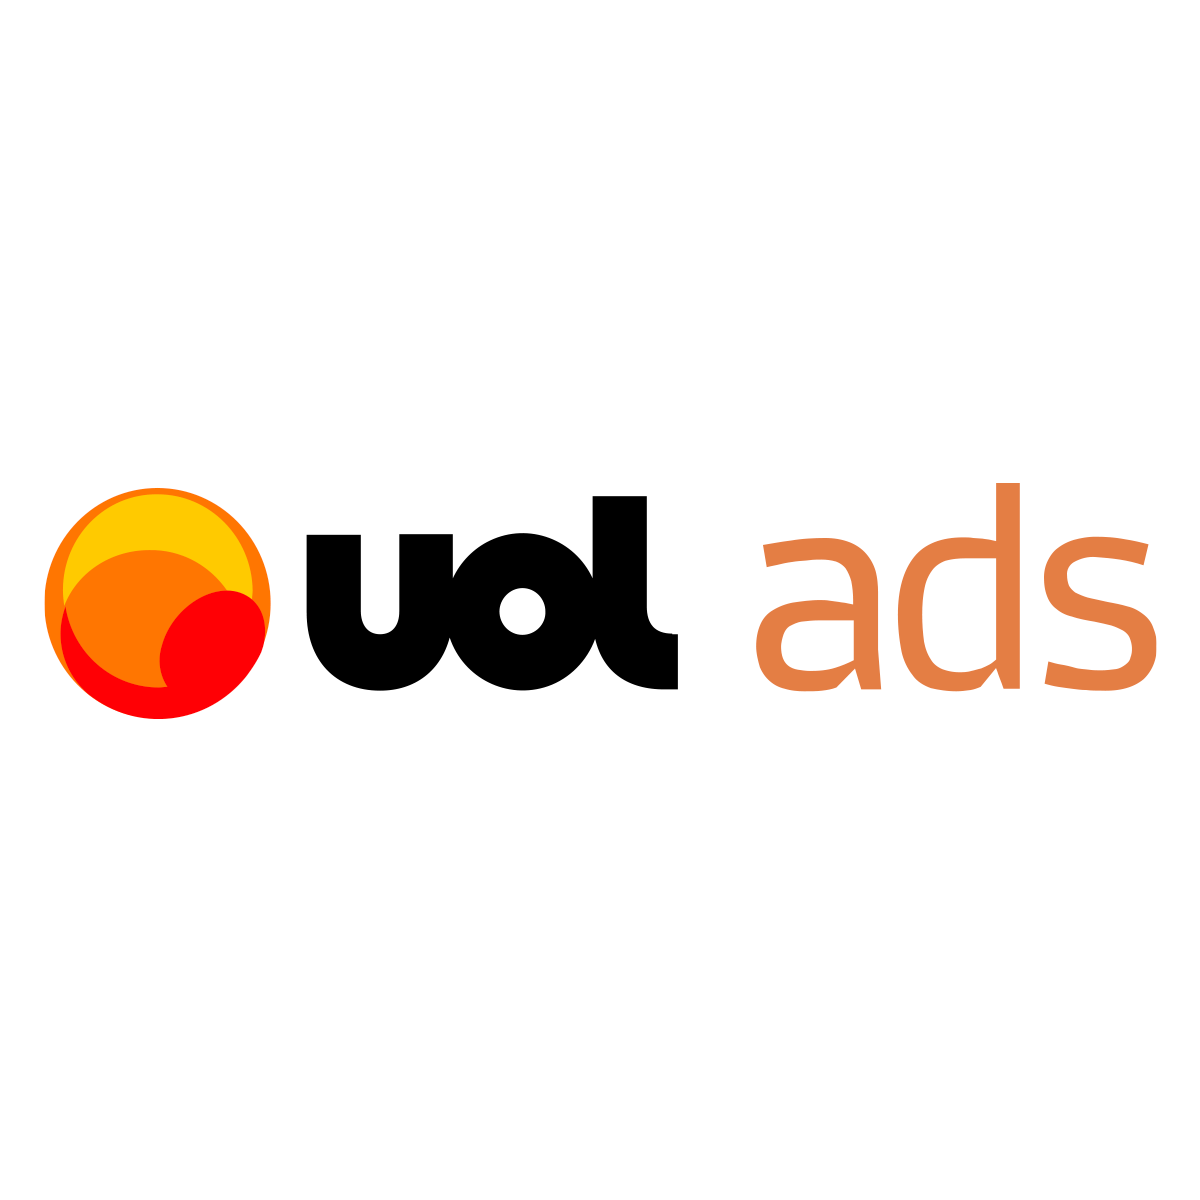 UOL ads - Anuncie no UOL e nos principais sites do Brasil